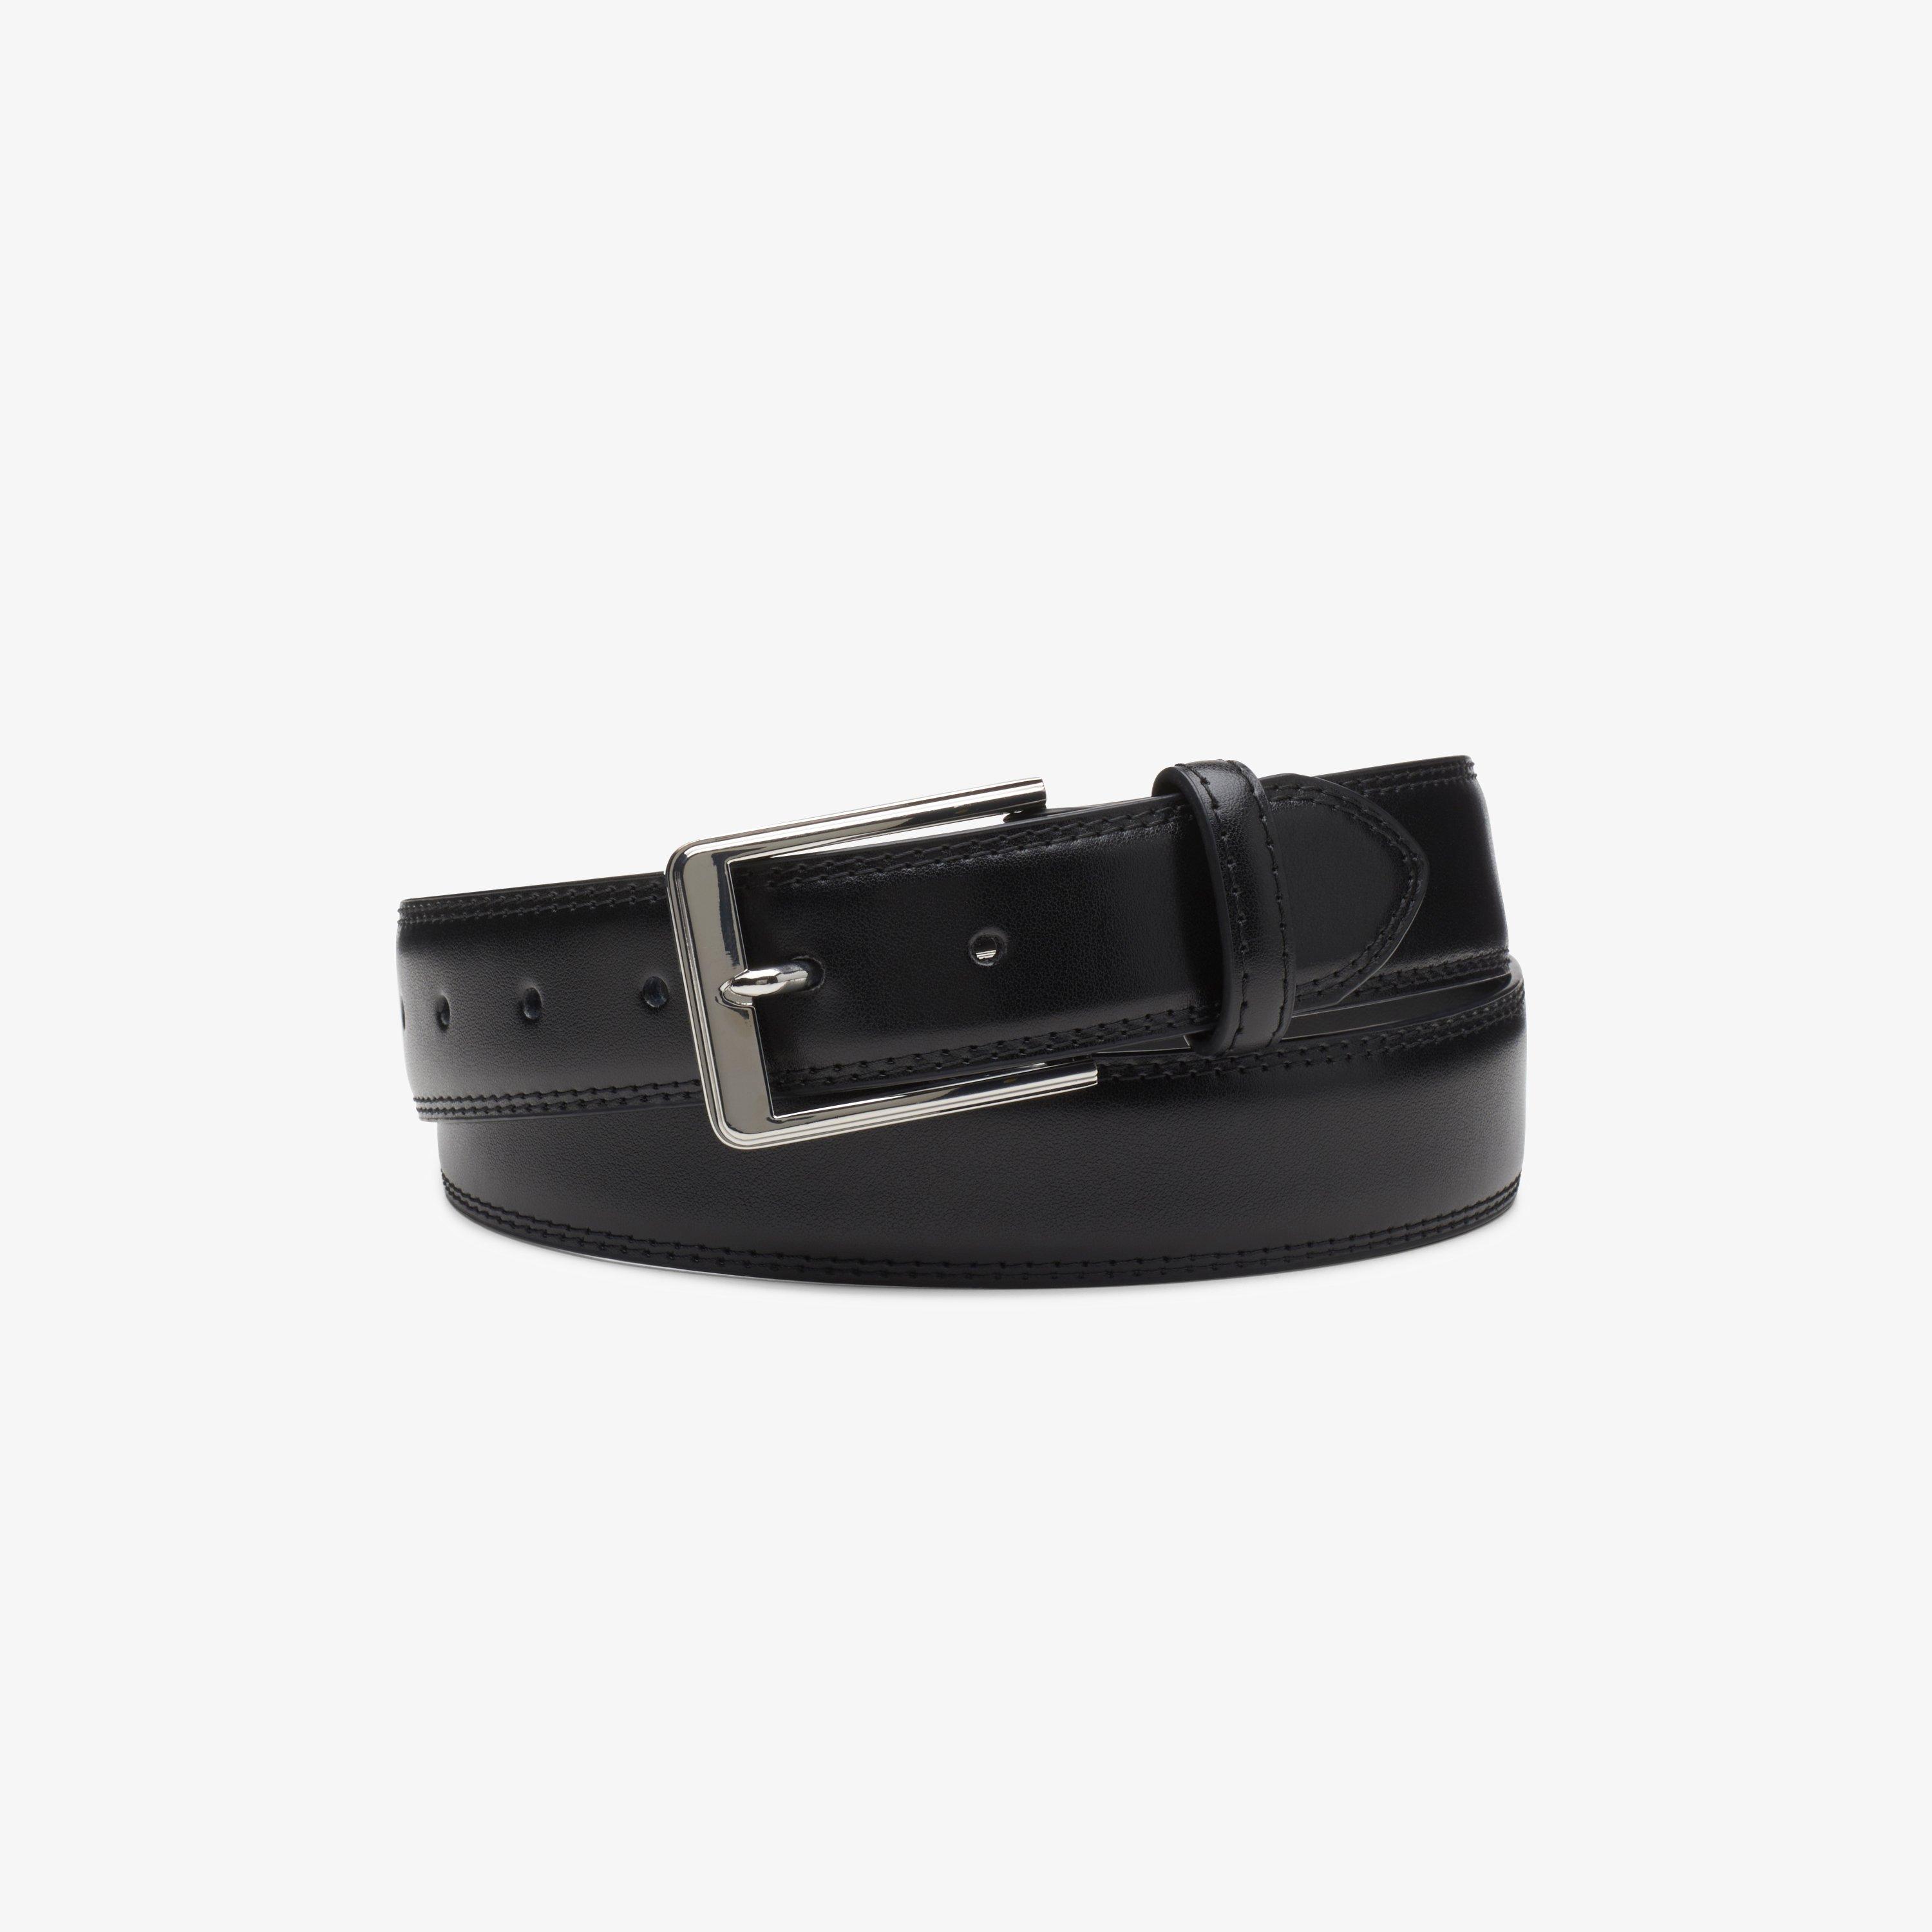 Mens Dress Belt Black Leather Belt | Clarks US